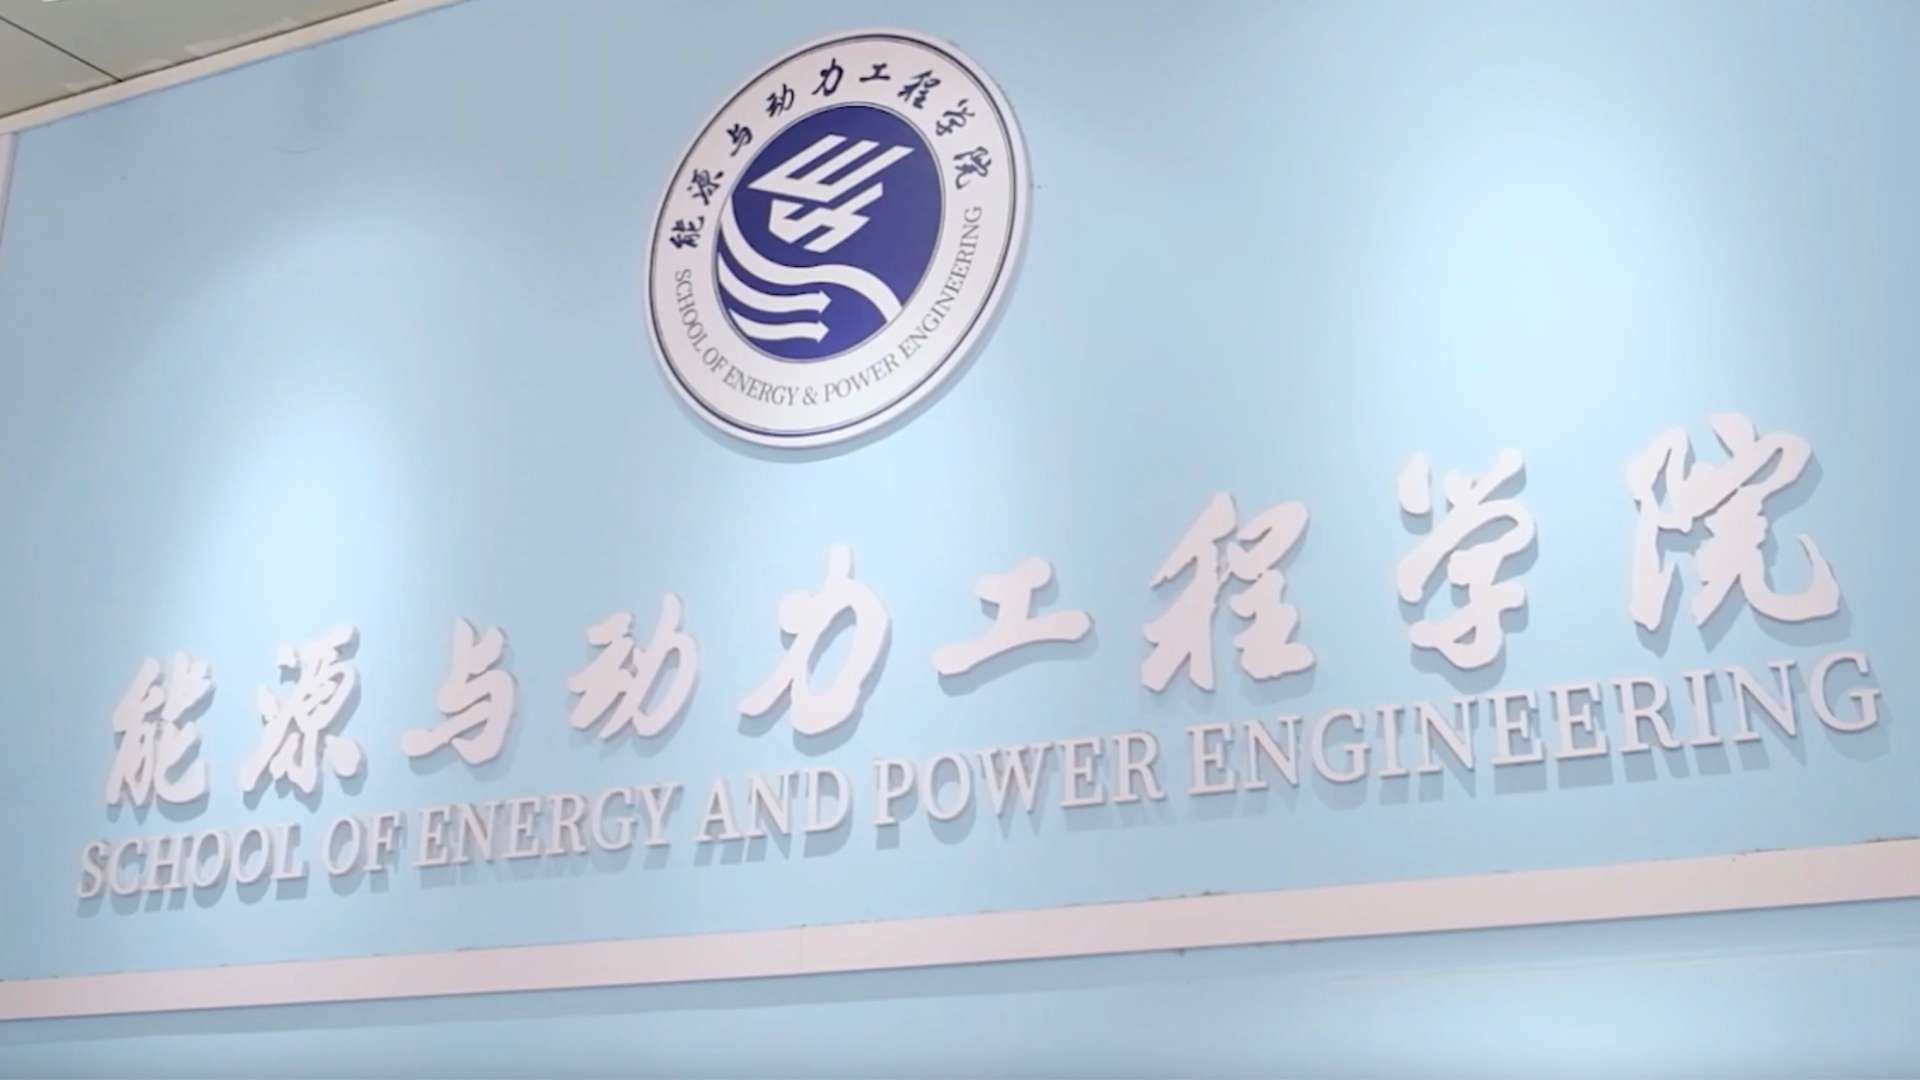 齐鲁工业大学能源与动力工程学院宣传片